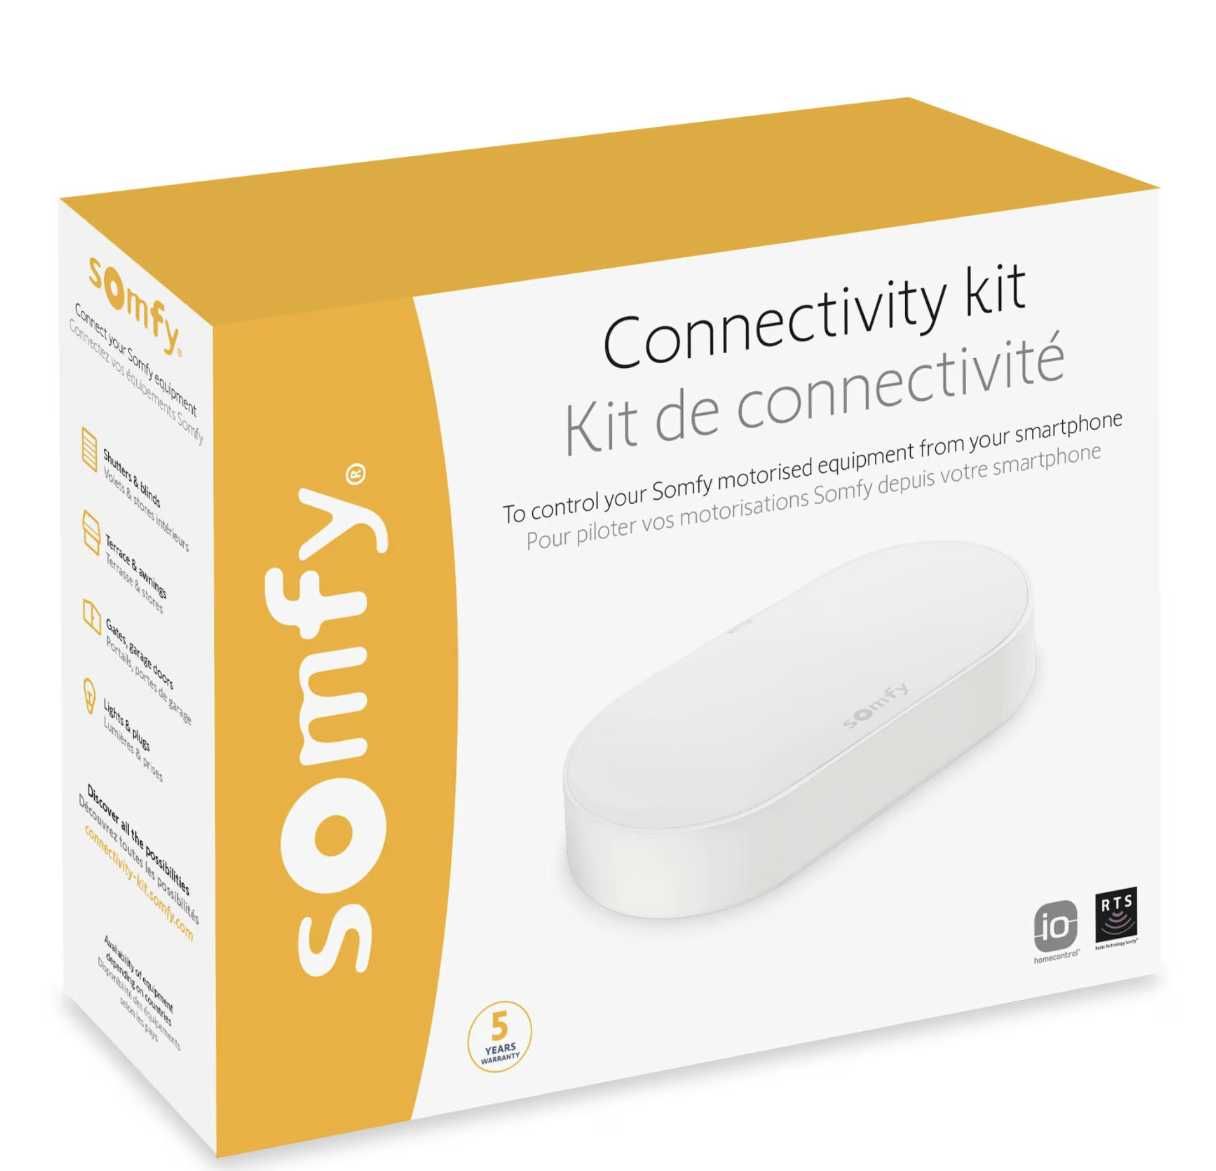 Somfy Connectivity Kit pentru conectarea echipamentelor din locuinta